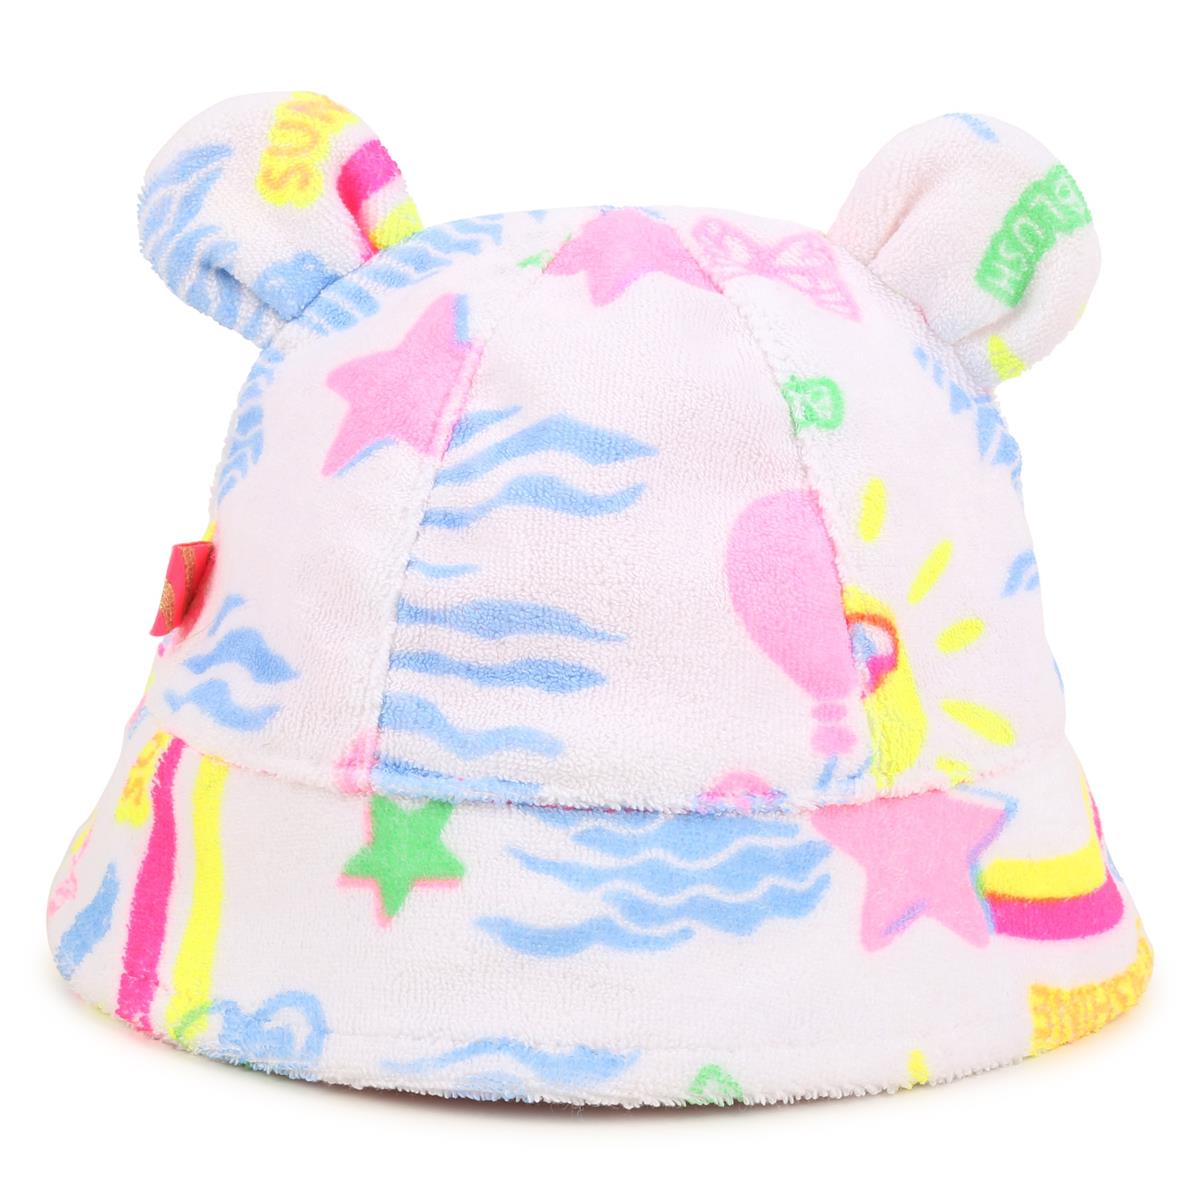 Baby Girls Pink Logo Hat